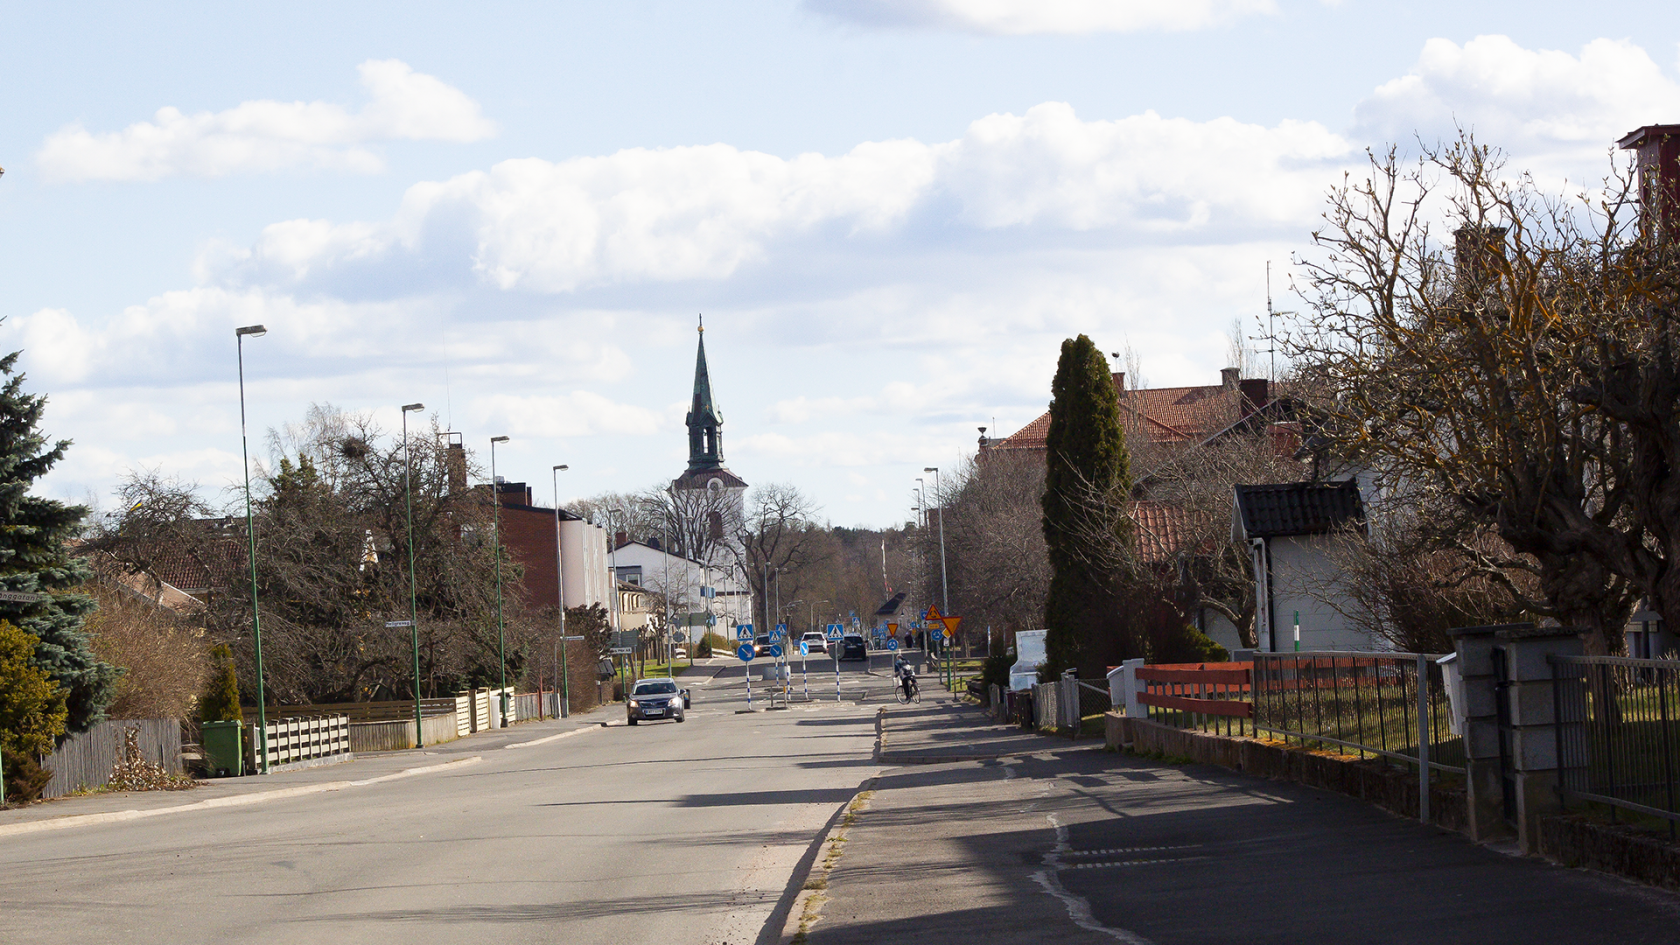 vy över Tidaholm med TIdaholms kyrka i centrum, bilar kör på vägen som omges av hus på vardera sida.